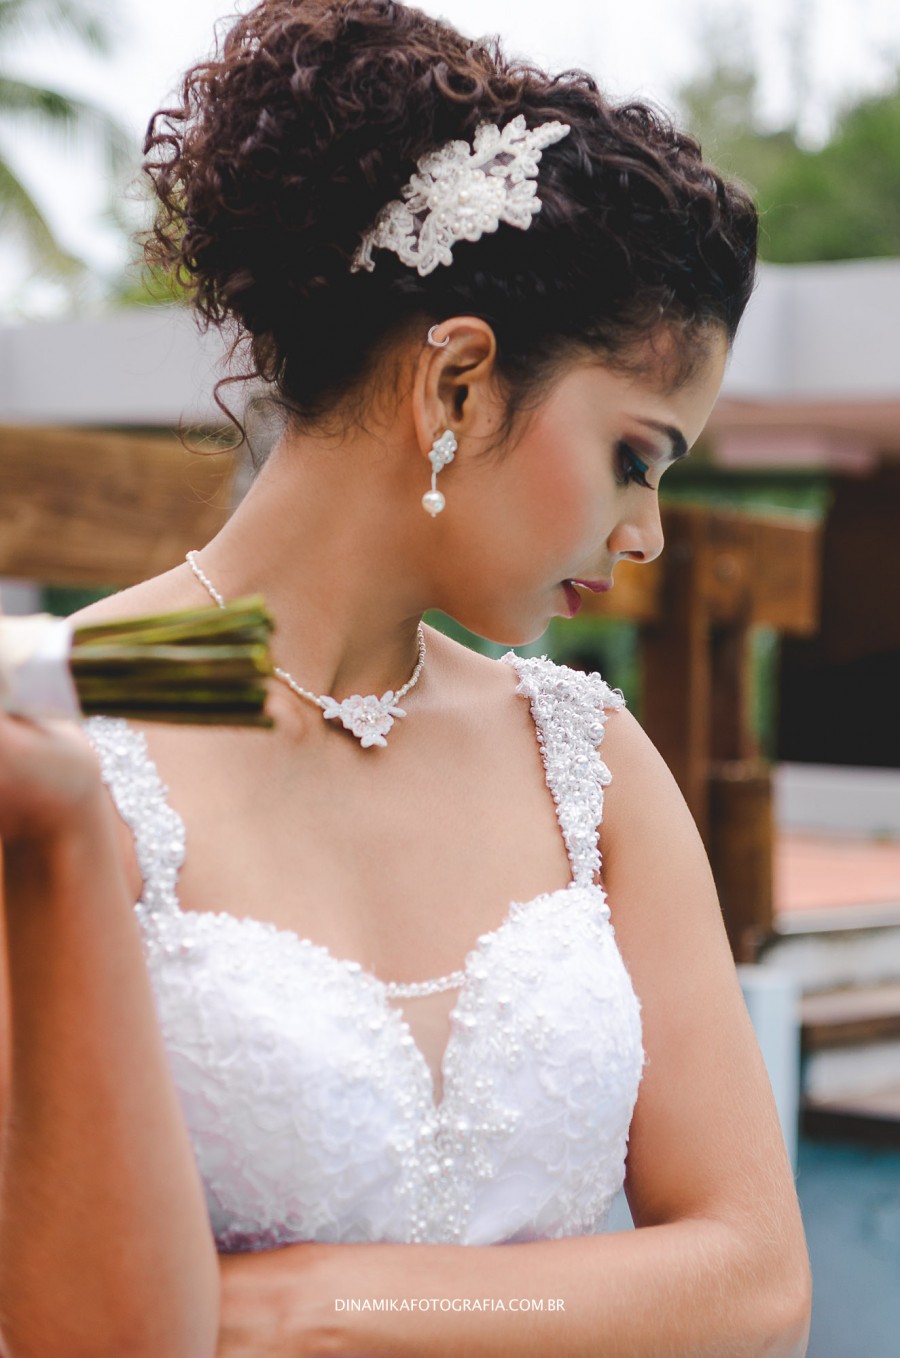 Ianna Noivas - A blogueirinha @nogueiraemillys com nosso vestido de noiva  Princesinha e uma coroa dourada belíssimavc arrasou Ensaio  fotográfico lindo.. #vestidodenoiva #noiva #ensaiofotografico #bloguerinha # casamento #coroadenoiva #buquedenoiva